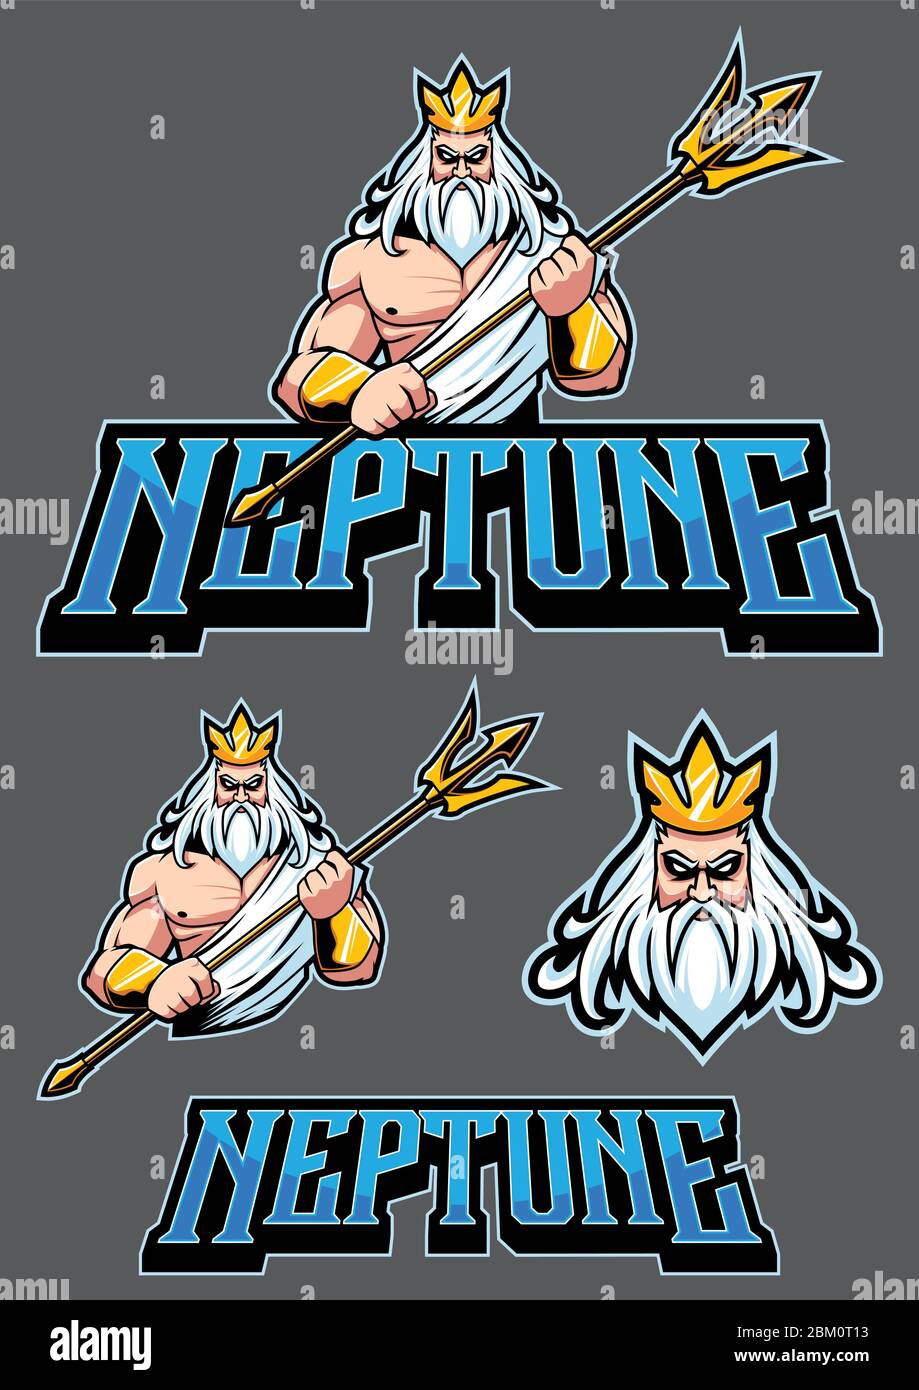 Mascota o ilustración del logotipo del dios del mar Neptuno. Ilustración del Vector